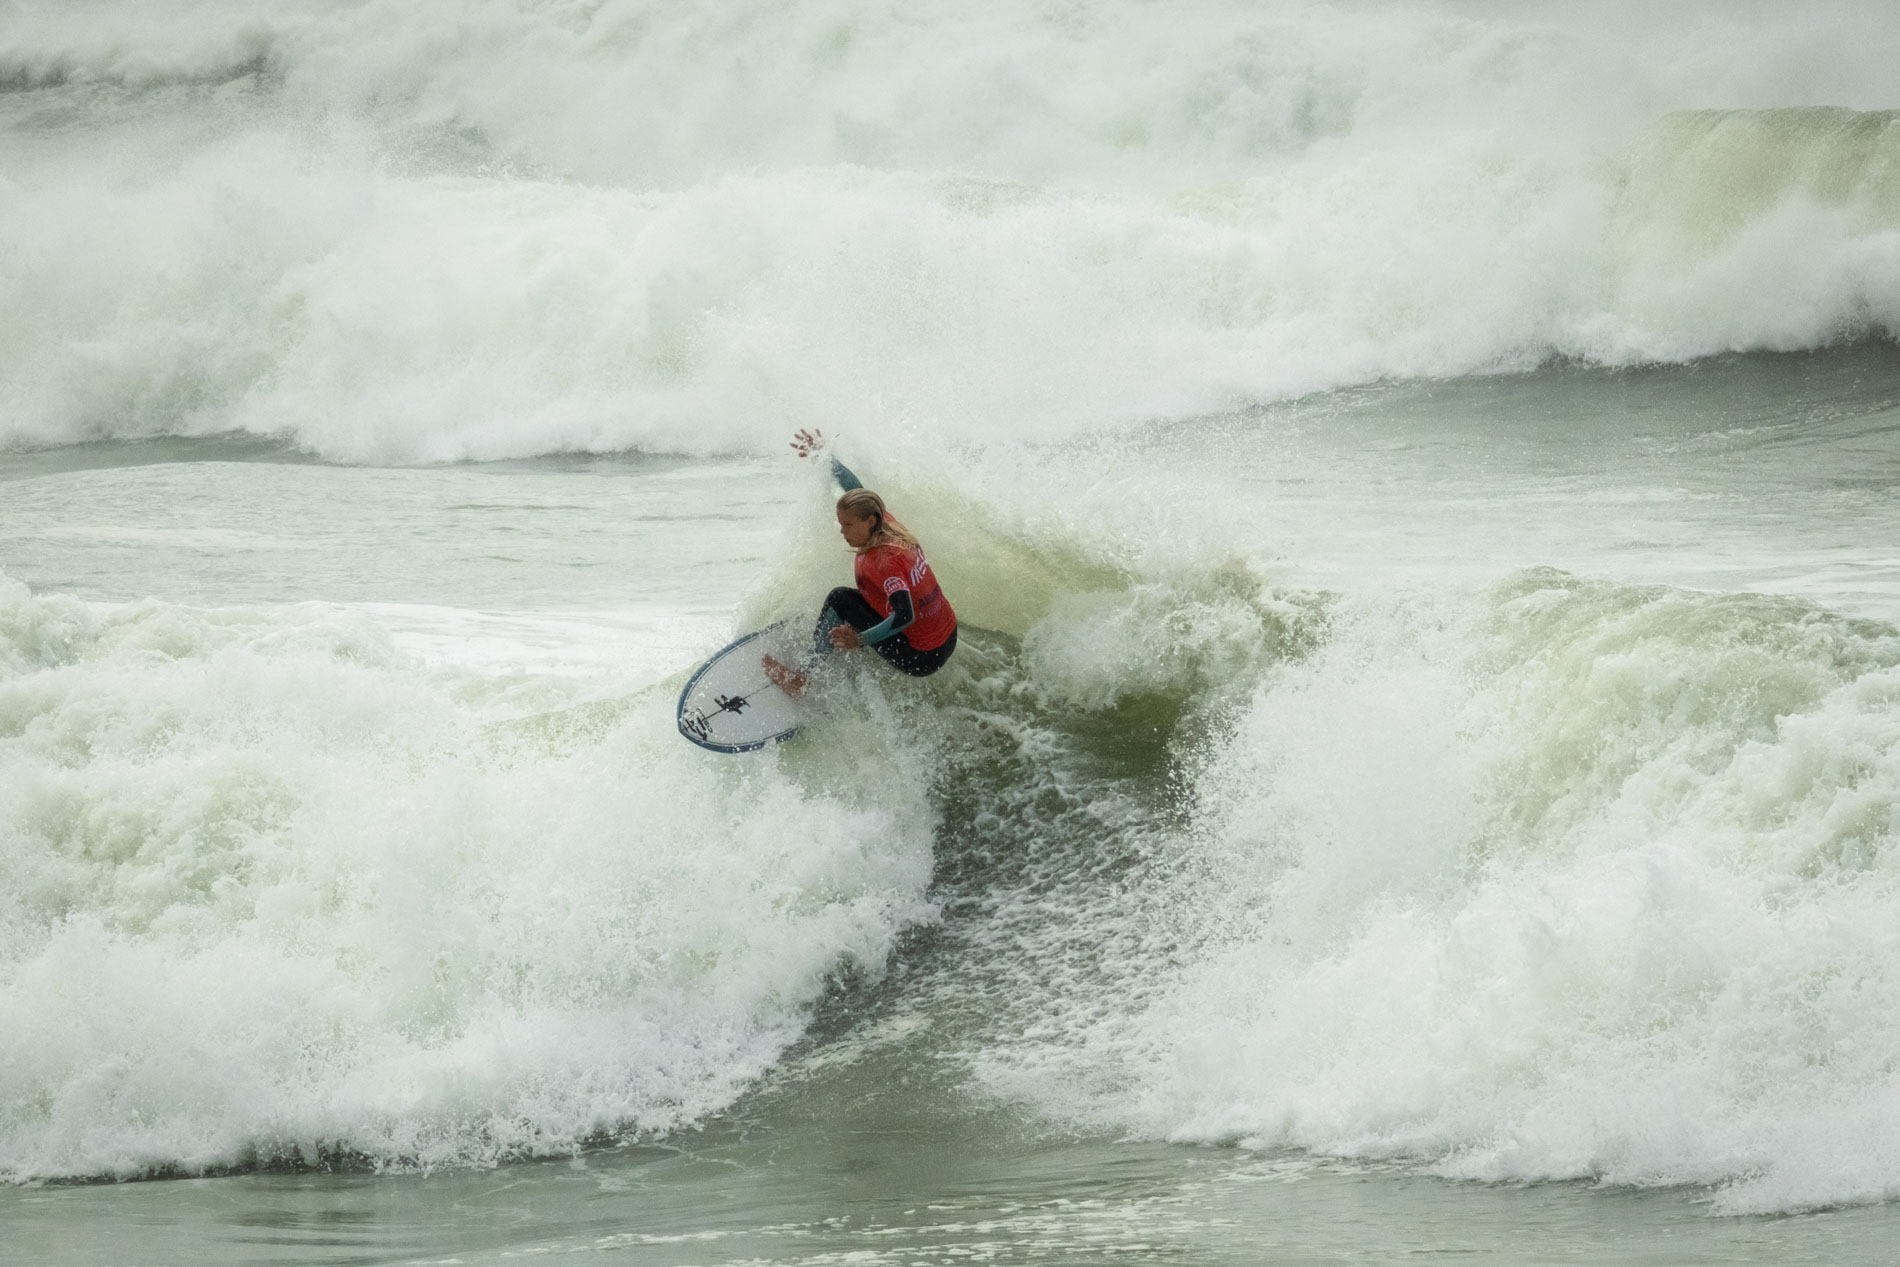 Liga MEO Surf
Figueira da Foz
©Jorge Matreno/ANSurfistas